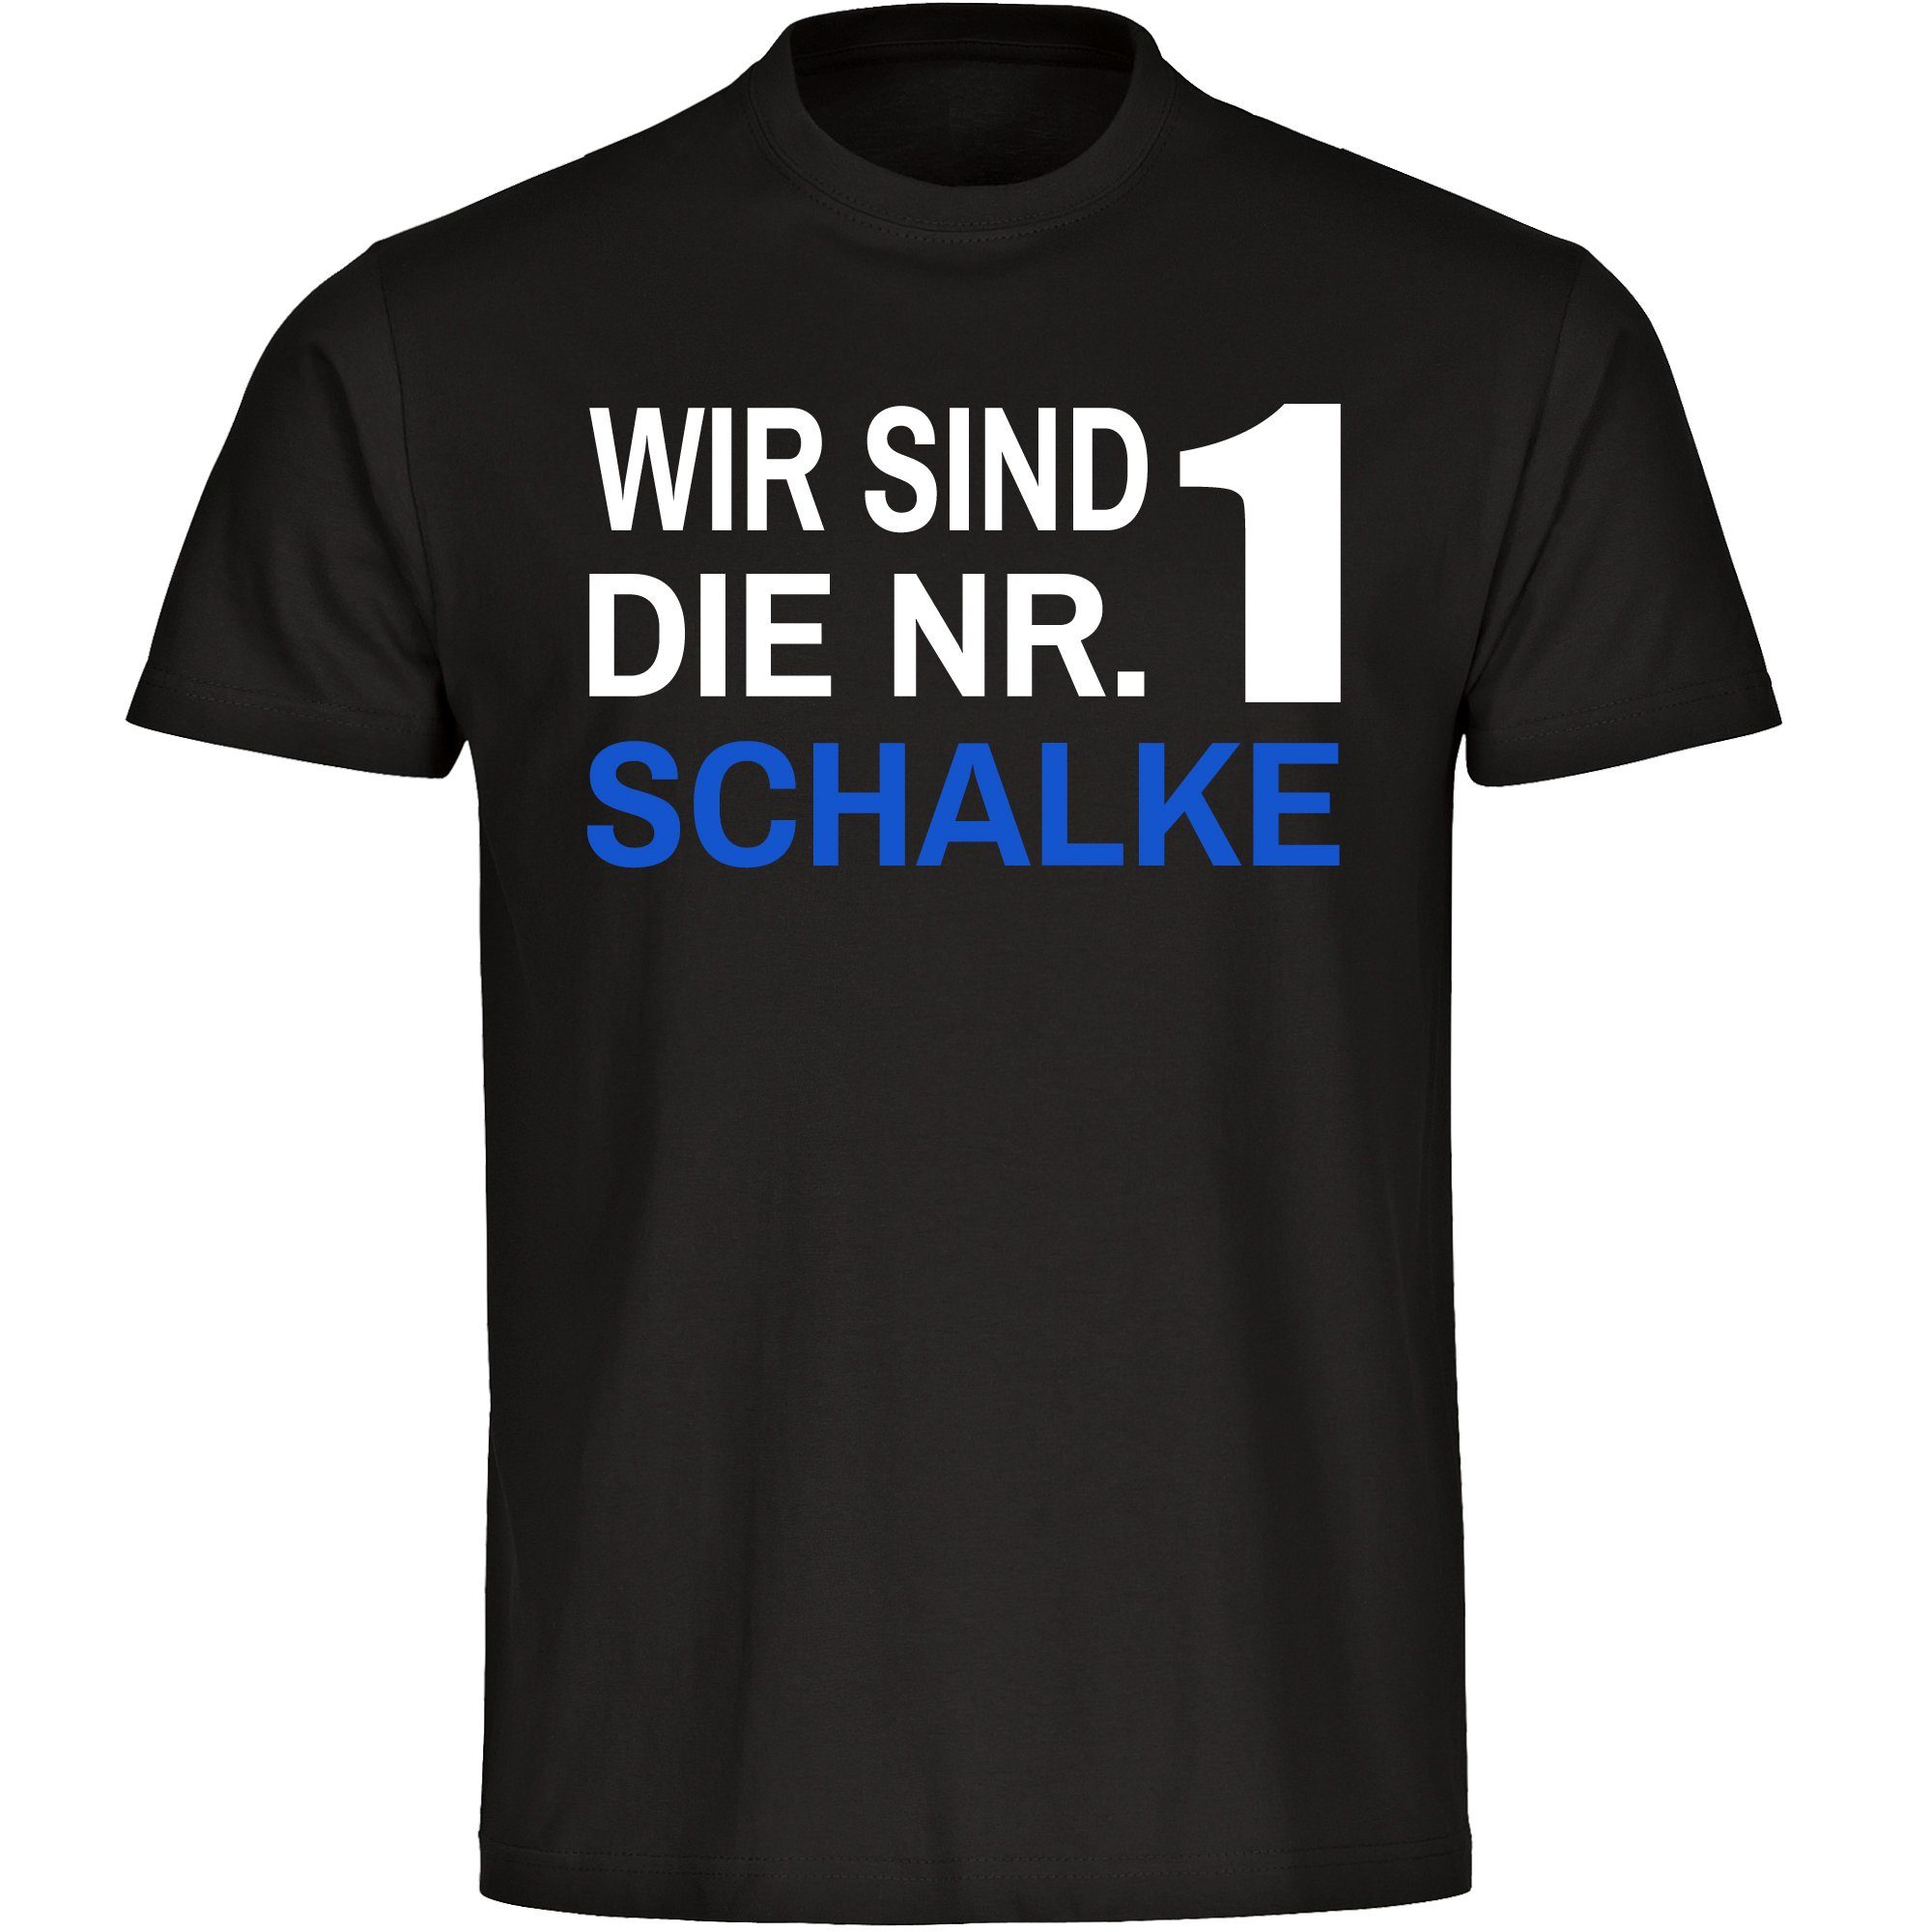 multifanshop T-Shirt Kinder Schalke - Wir sind die Nr. 1 - Jungen Mädchen Shirt Fanartikel